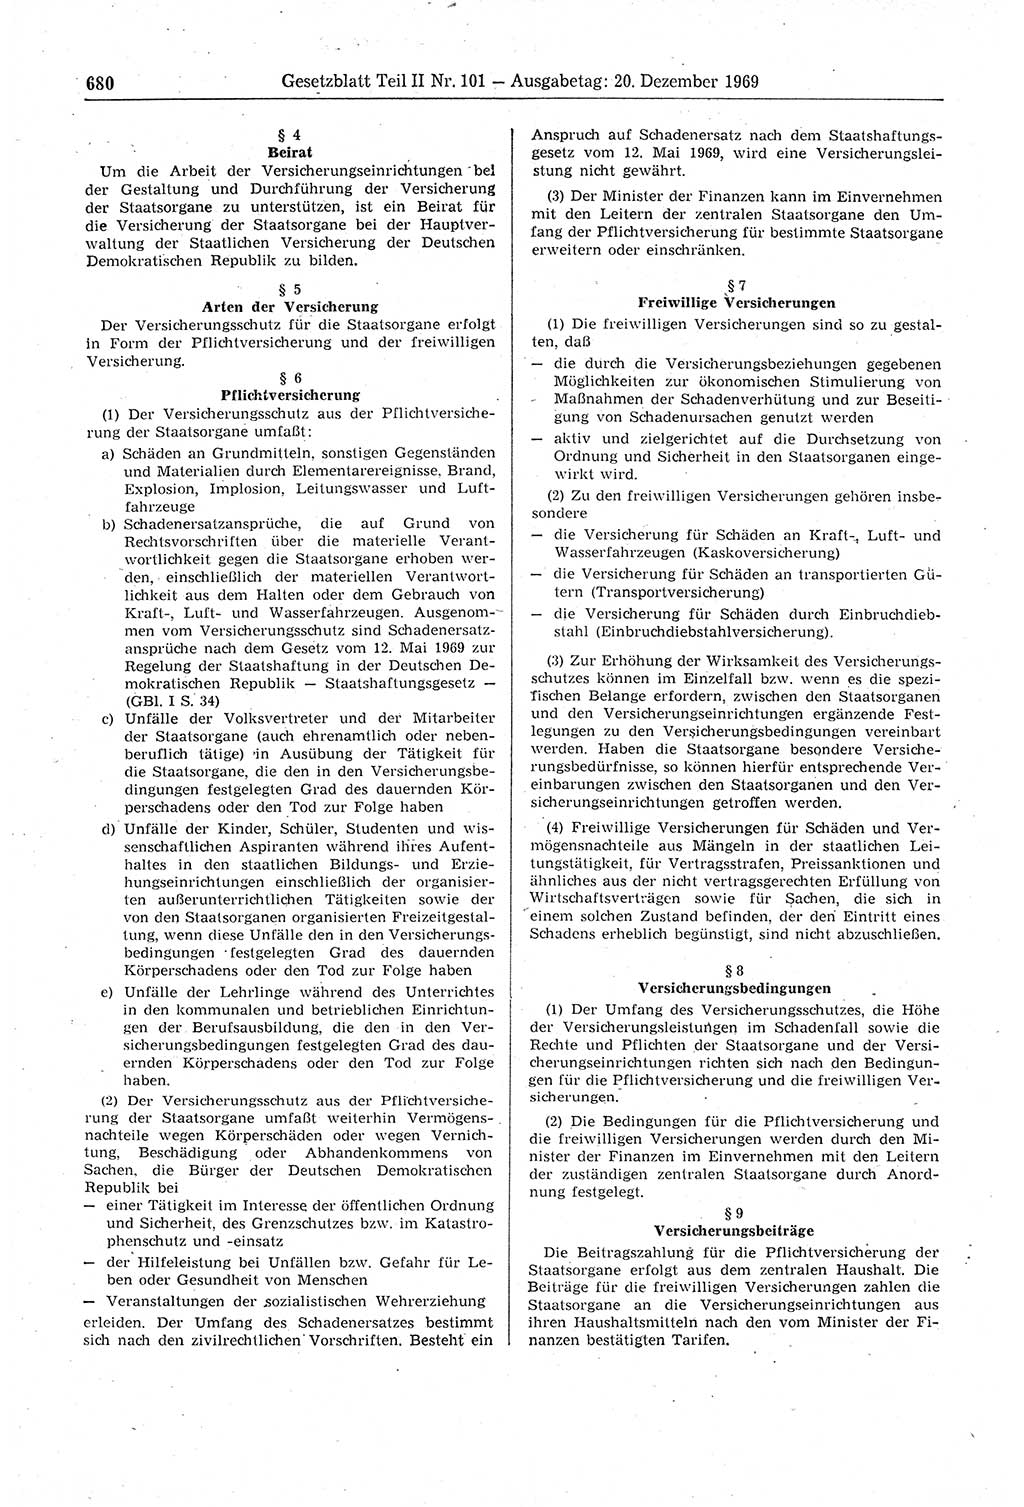 Gesetzblatt (GBl.) der Deutschen Demokratischen Republik (DDR) Teil ⅠⅠ 1969, Seite 680 (GBl. DDR ⅠⅠ 1969, S. 680)